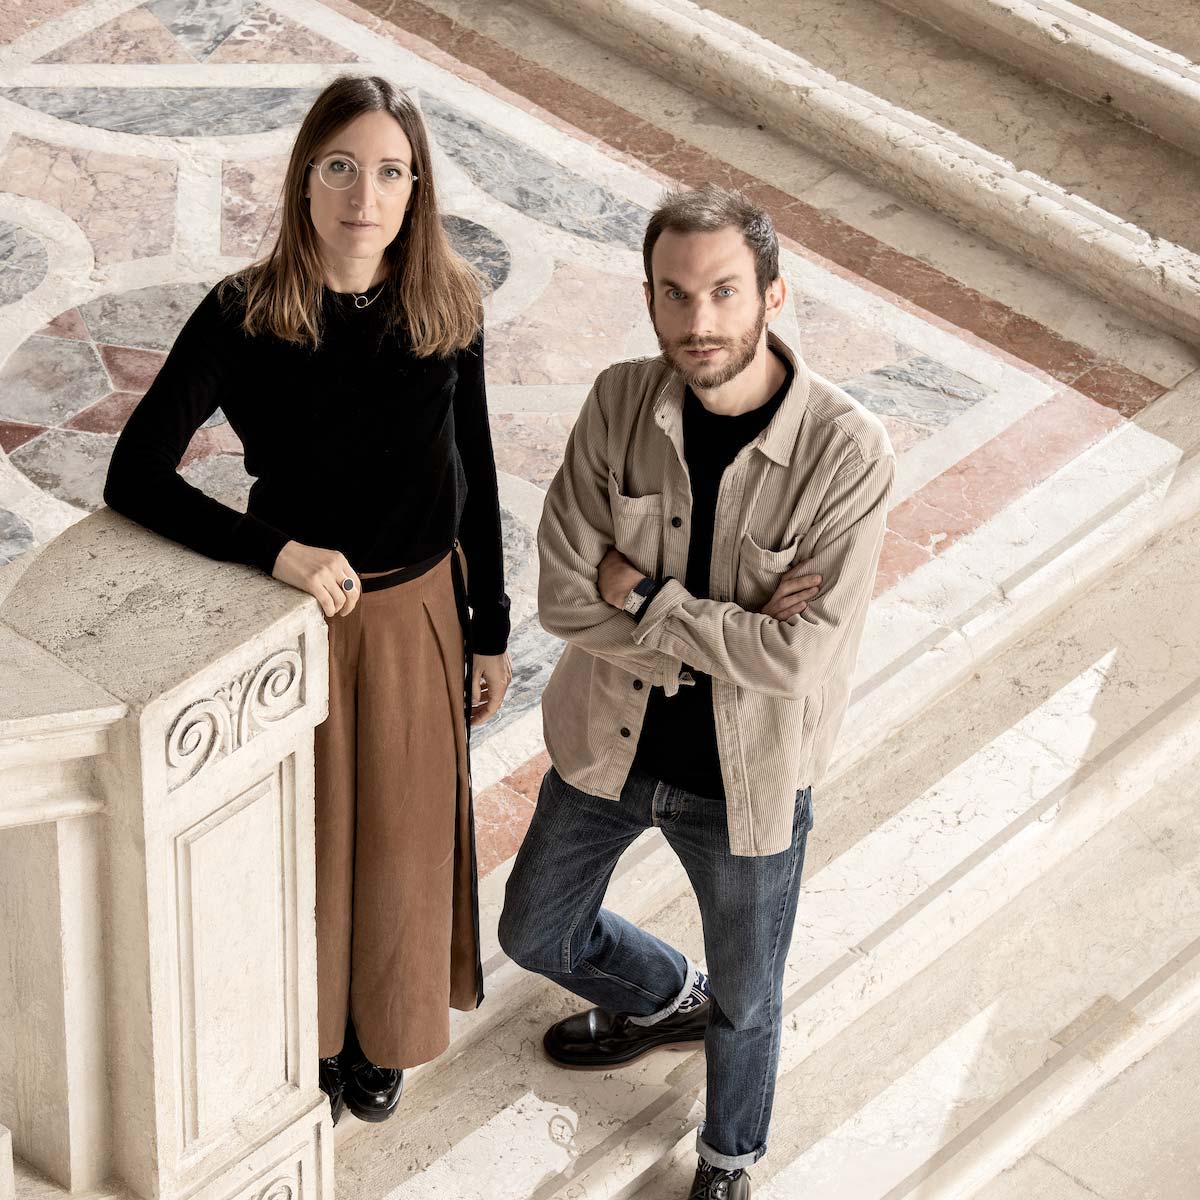 Giorgia Zanellato & Daniele Bortotto - Photo © Laila Pozzo, Michelangelo Foundation